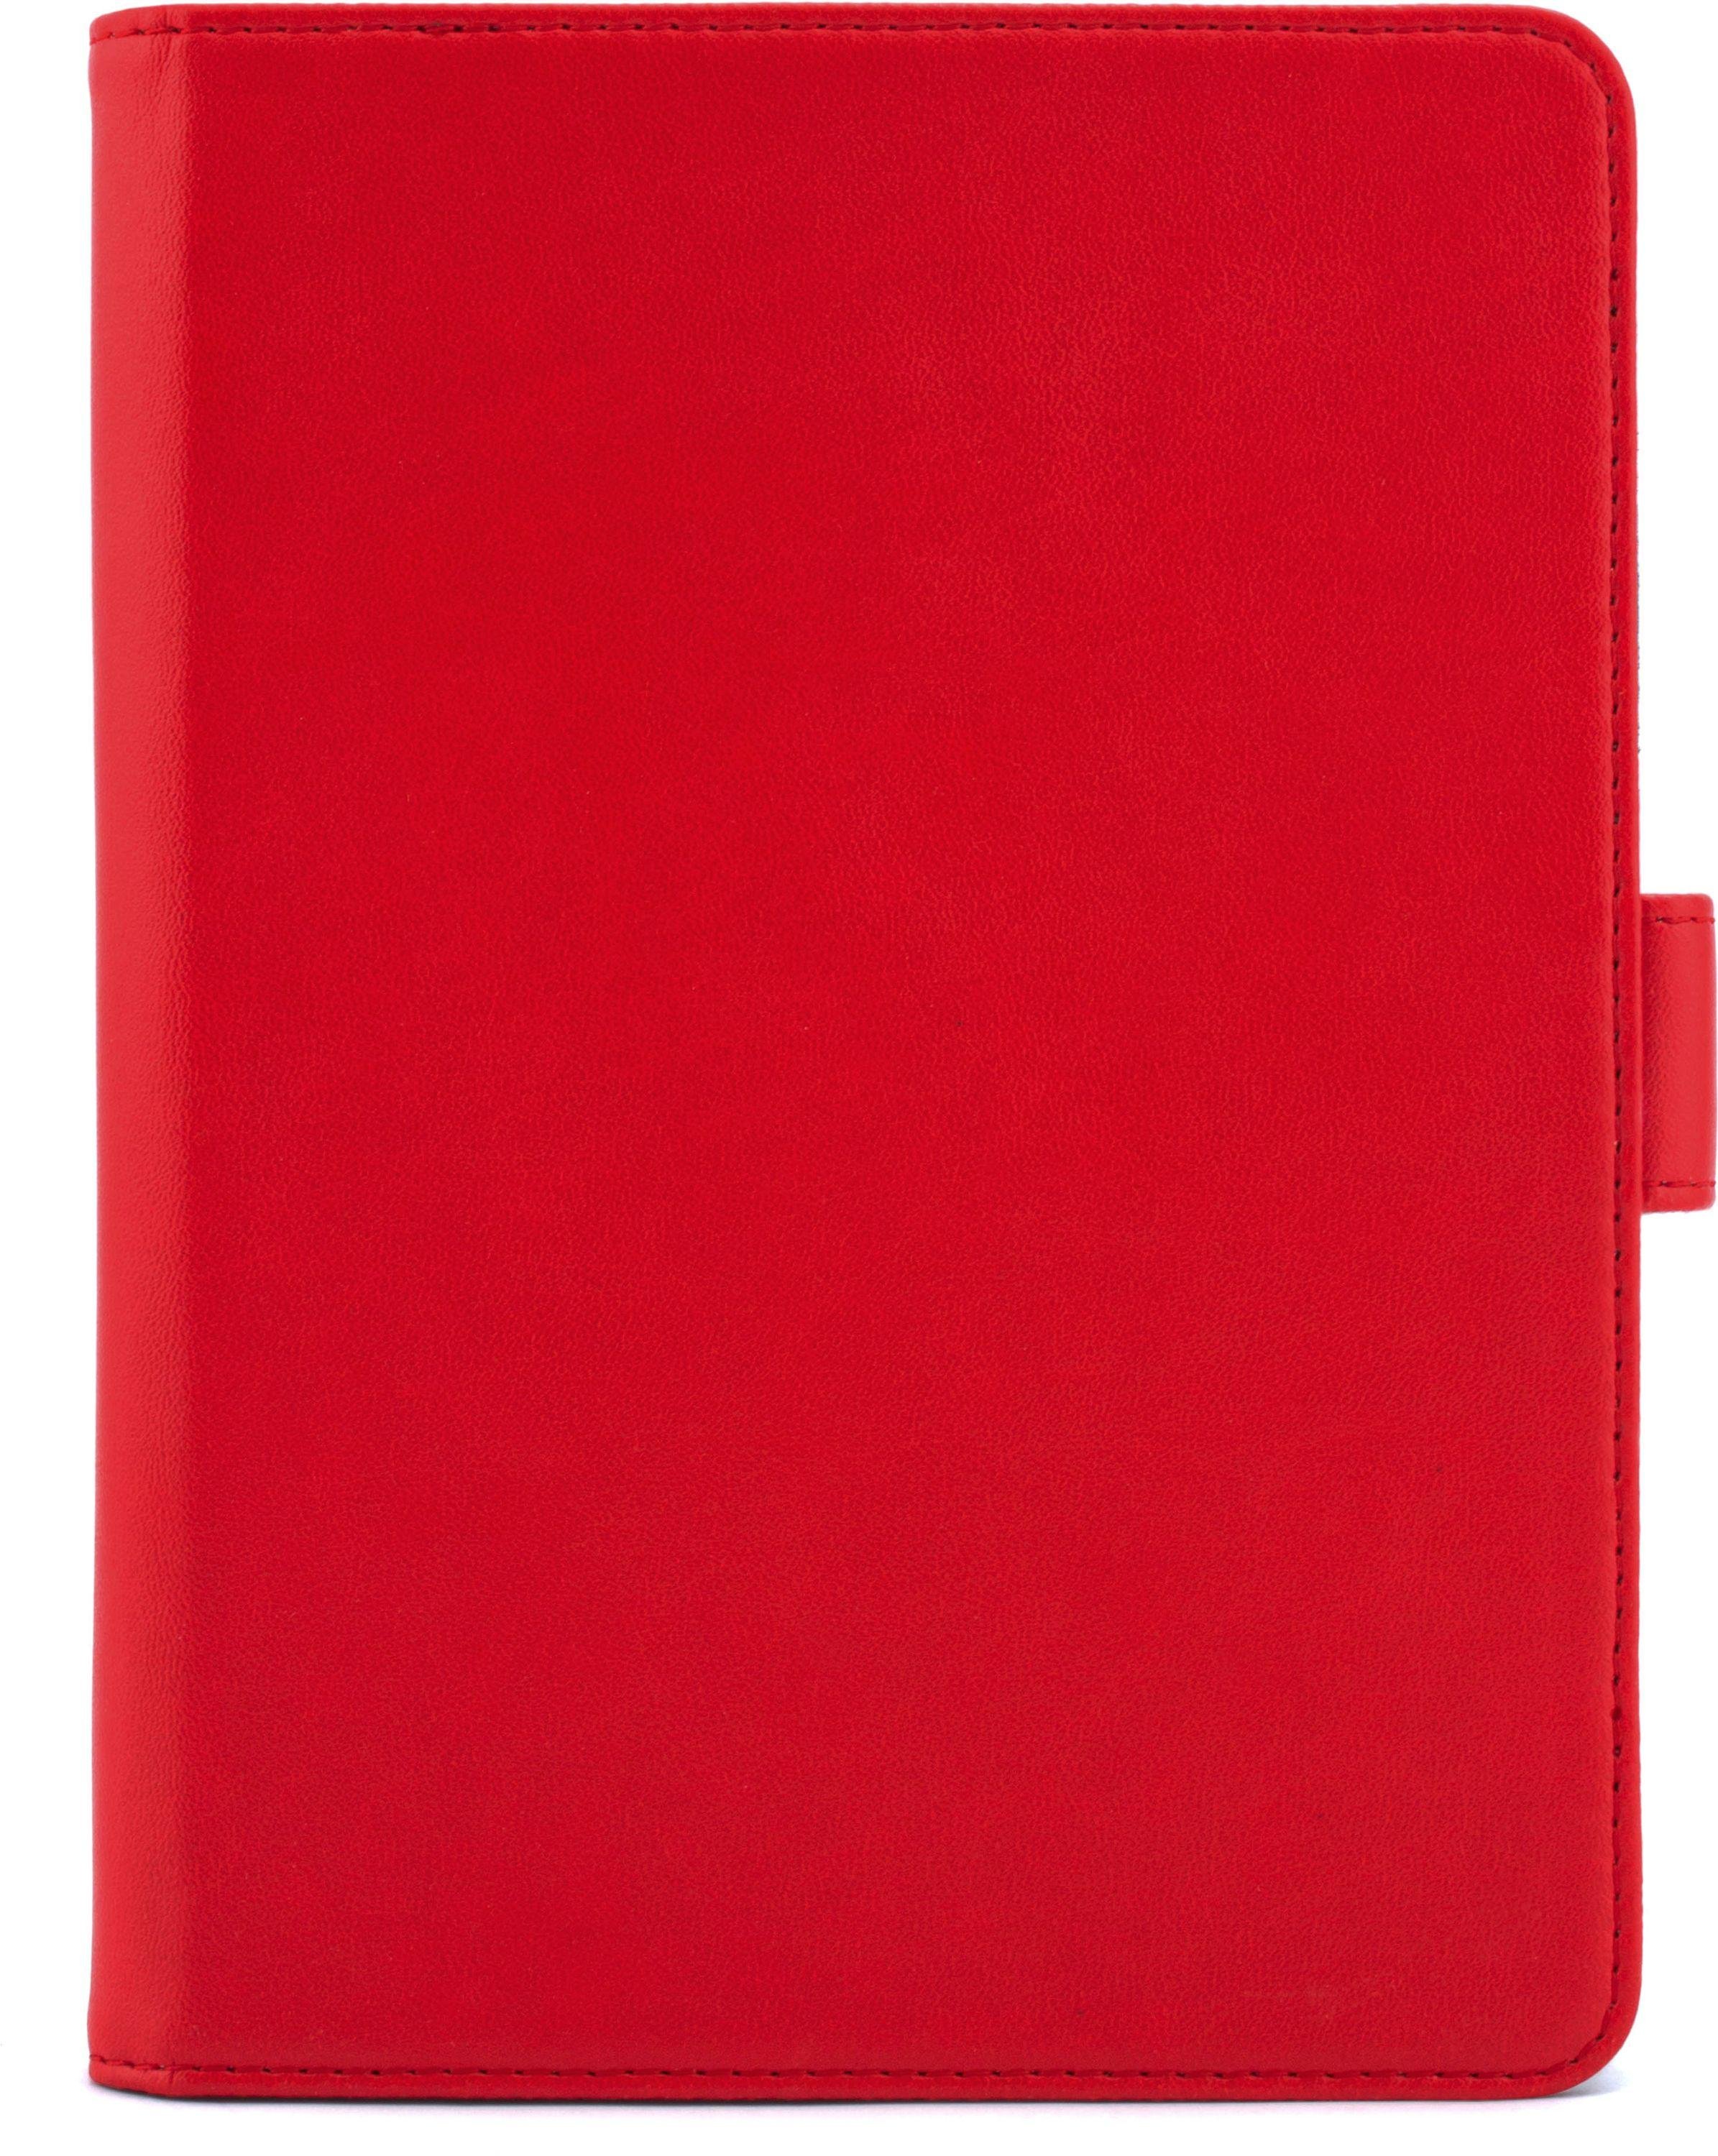 Universal E-reader Folio Case - Red